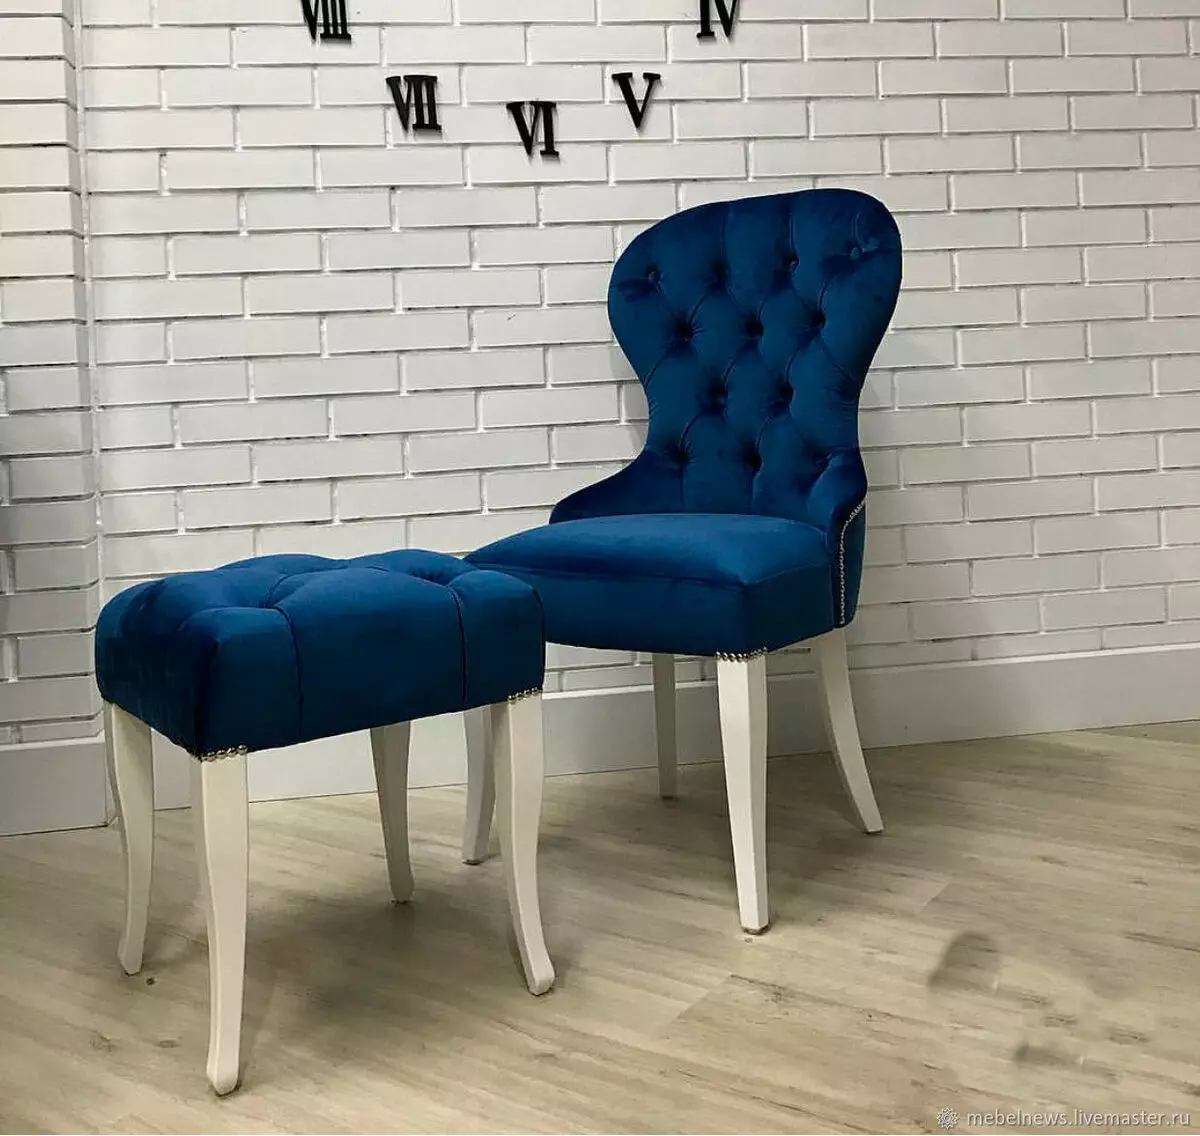 Lágy székek a nappaliban: székszékek, puha hátsó és karfa modellek és egyéb lehetőségek 9751_8